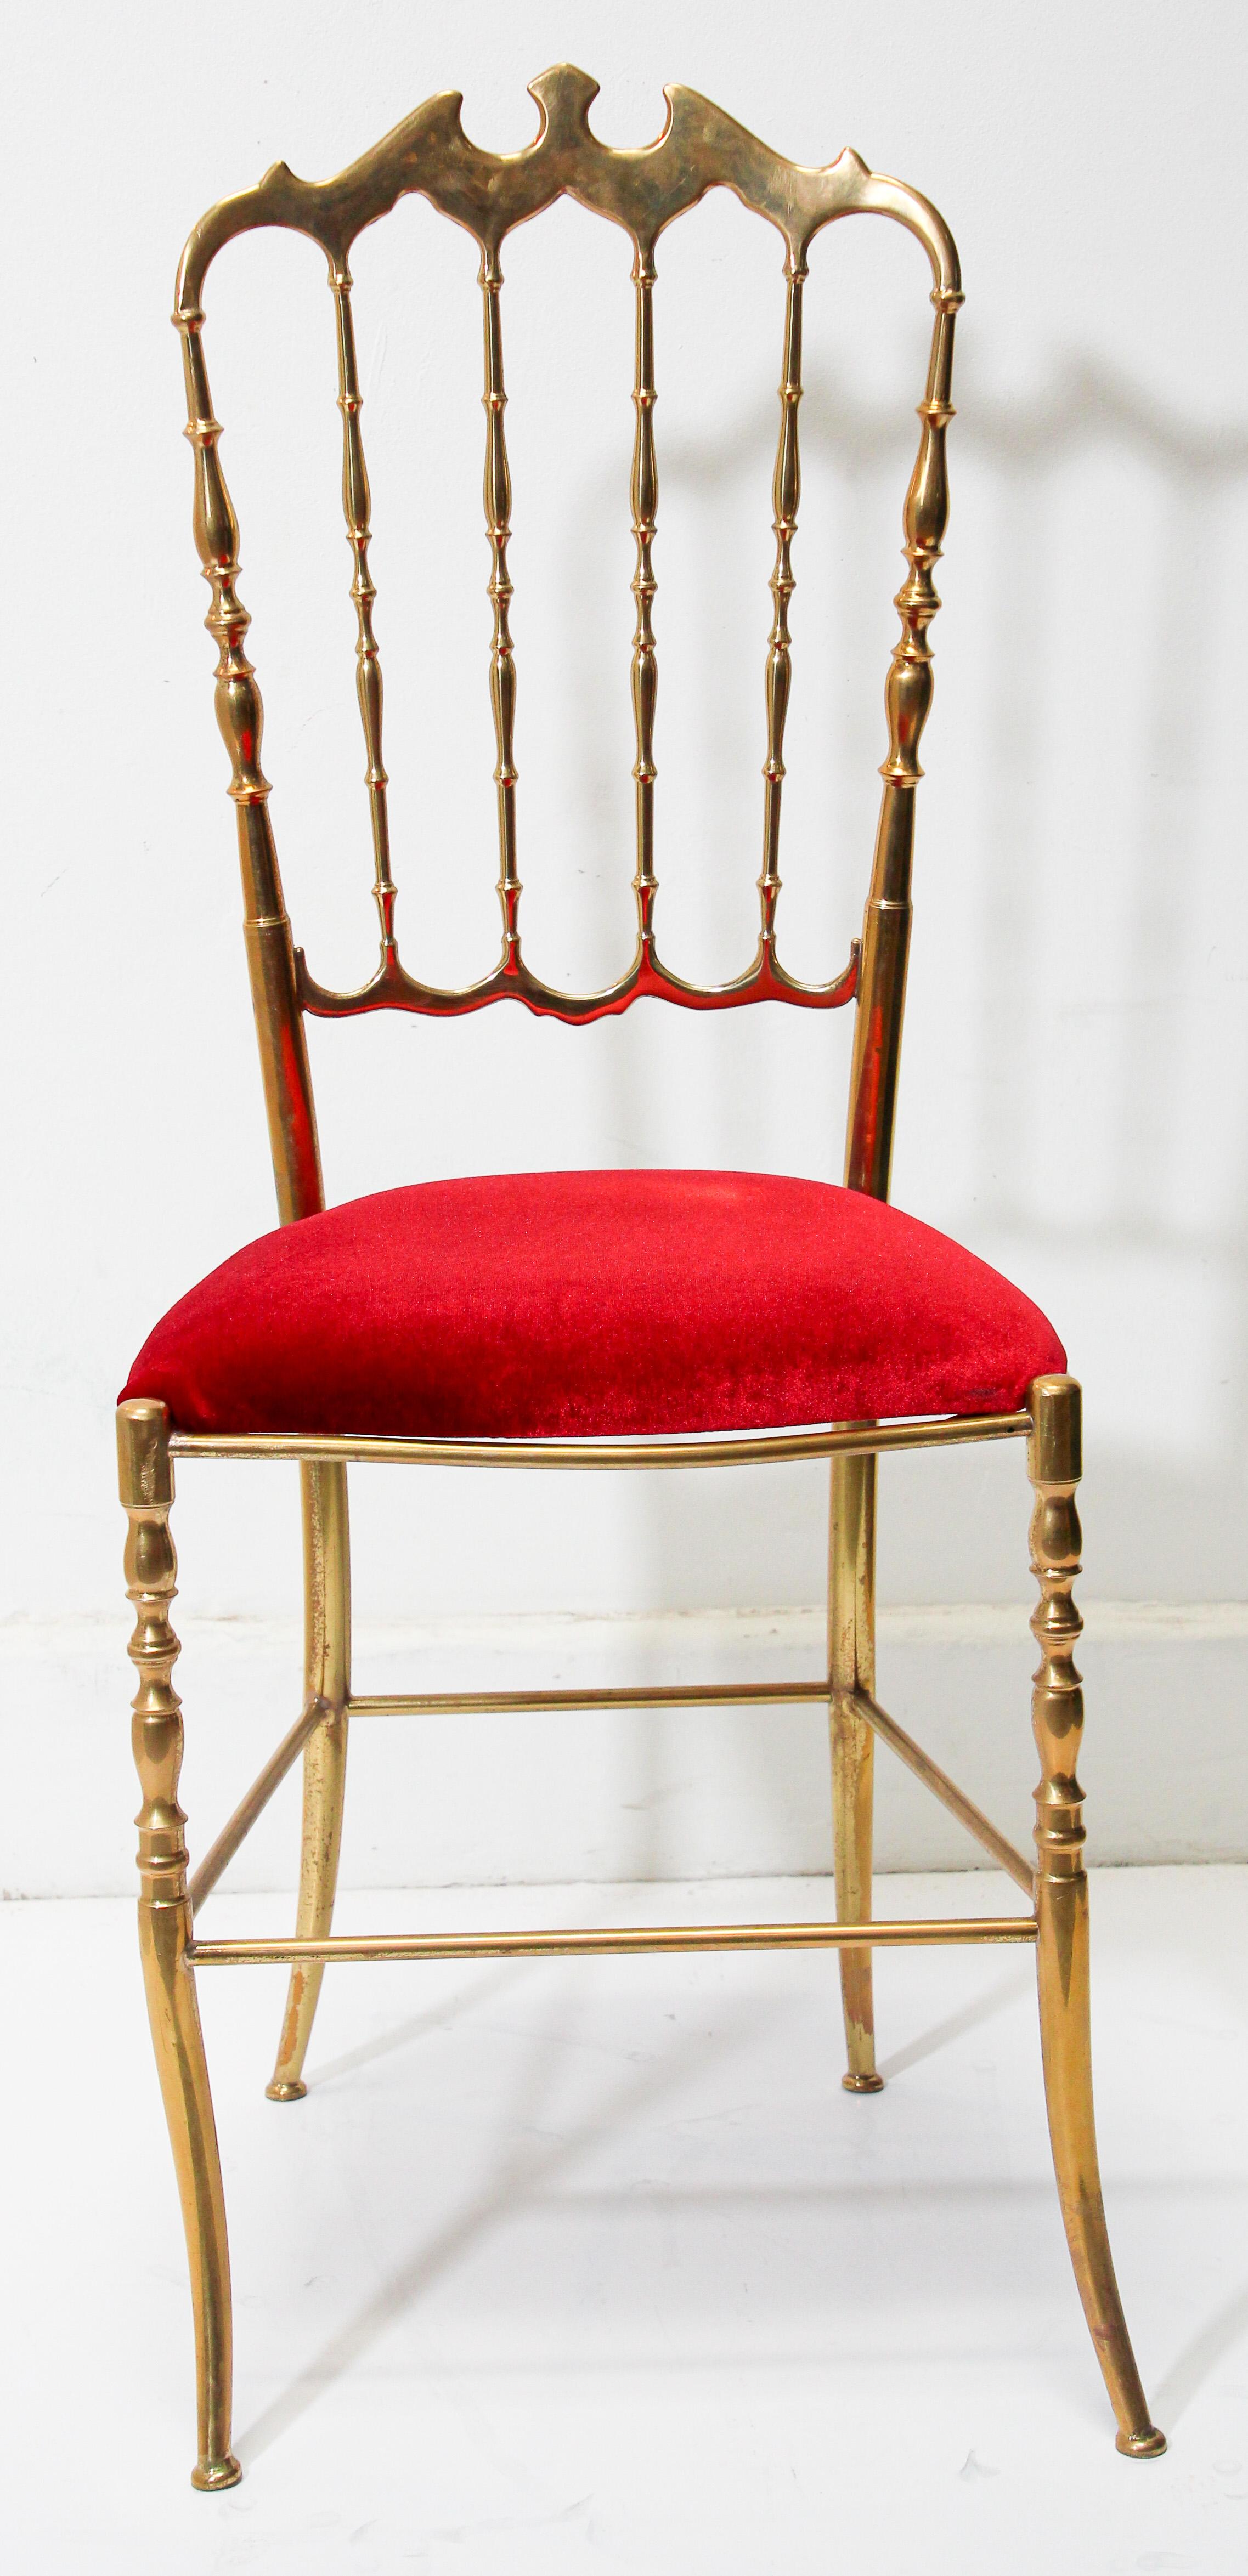 Wunderschöner italienischer Chiavari-Stuhl aus poliertem Messing mit Fledermausmotiv und rotem Samtbezug, um 1960.
Entworfen von Giuseppe Gaetano Descalzi und hergestellt seit dem frühen 19. Jahrhundert in der ligurischen Stadt Chiavari,